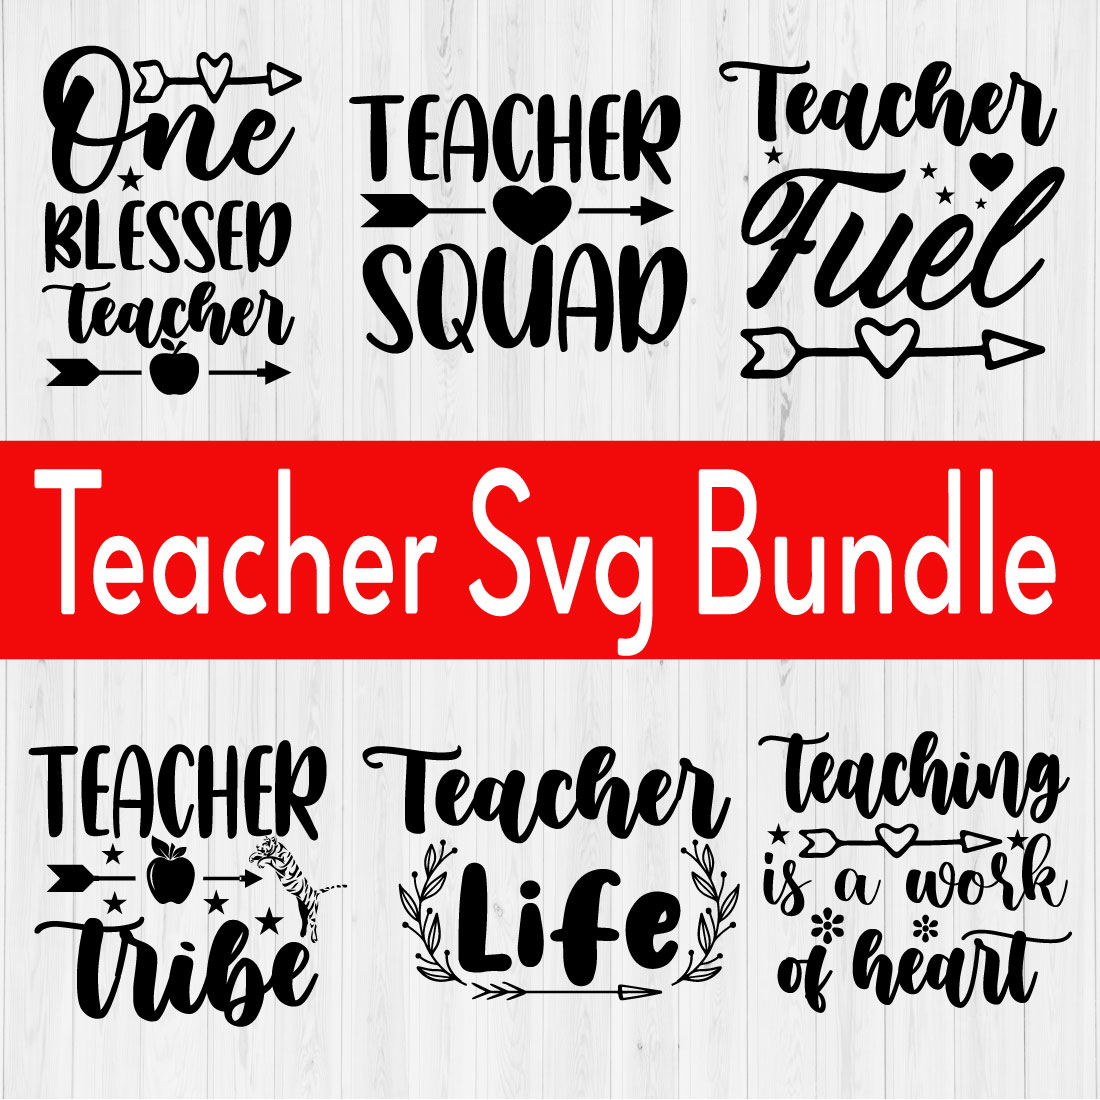 Teacher Svg Bundle Vol1 cover image.